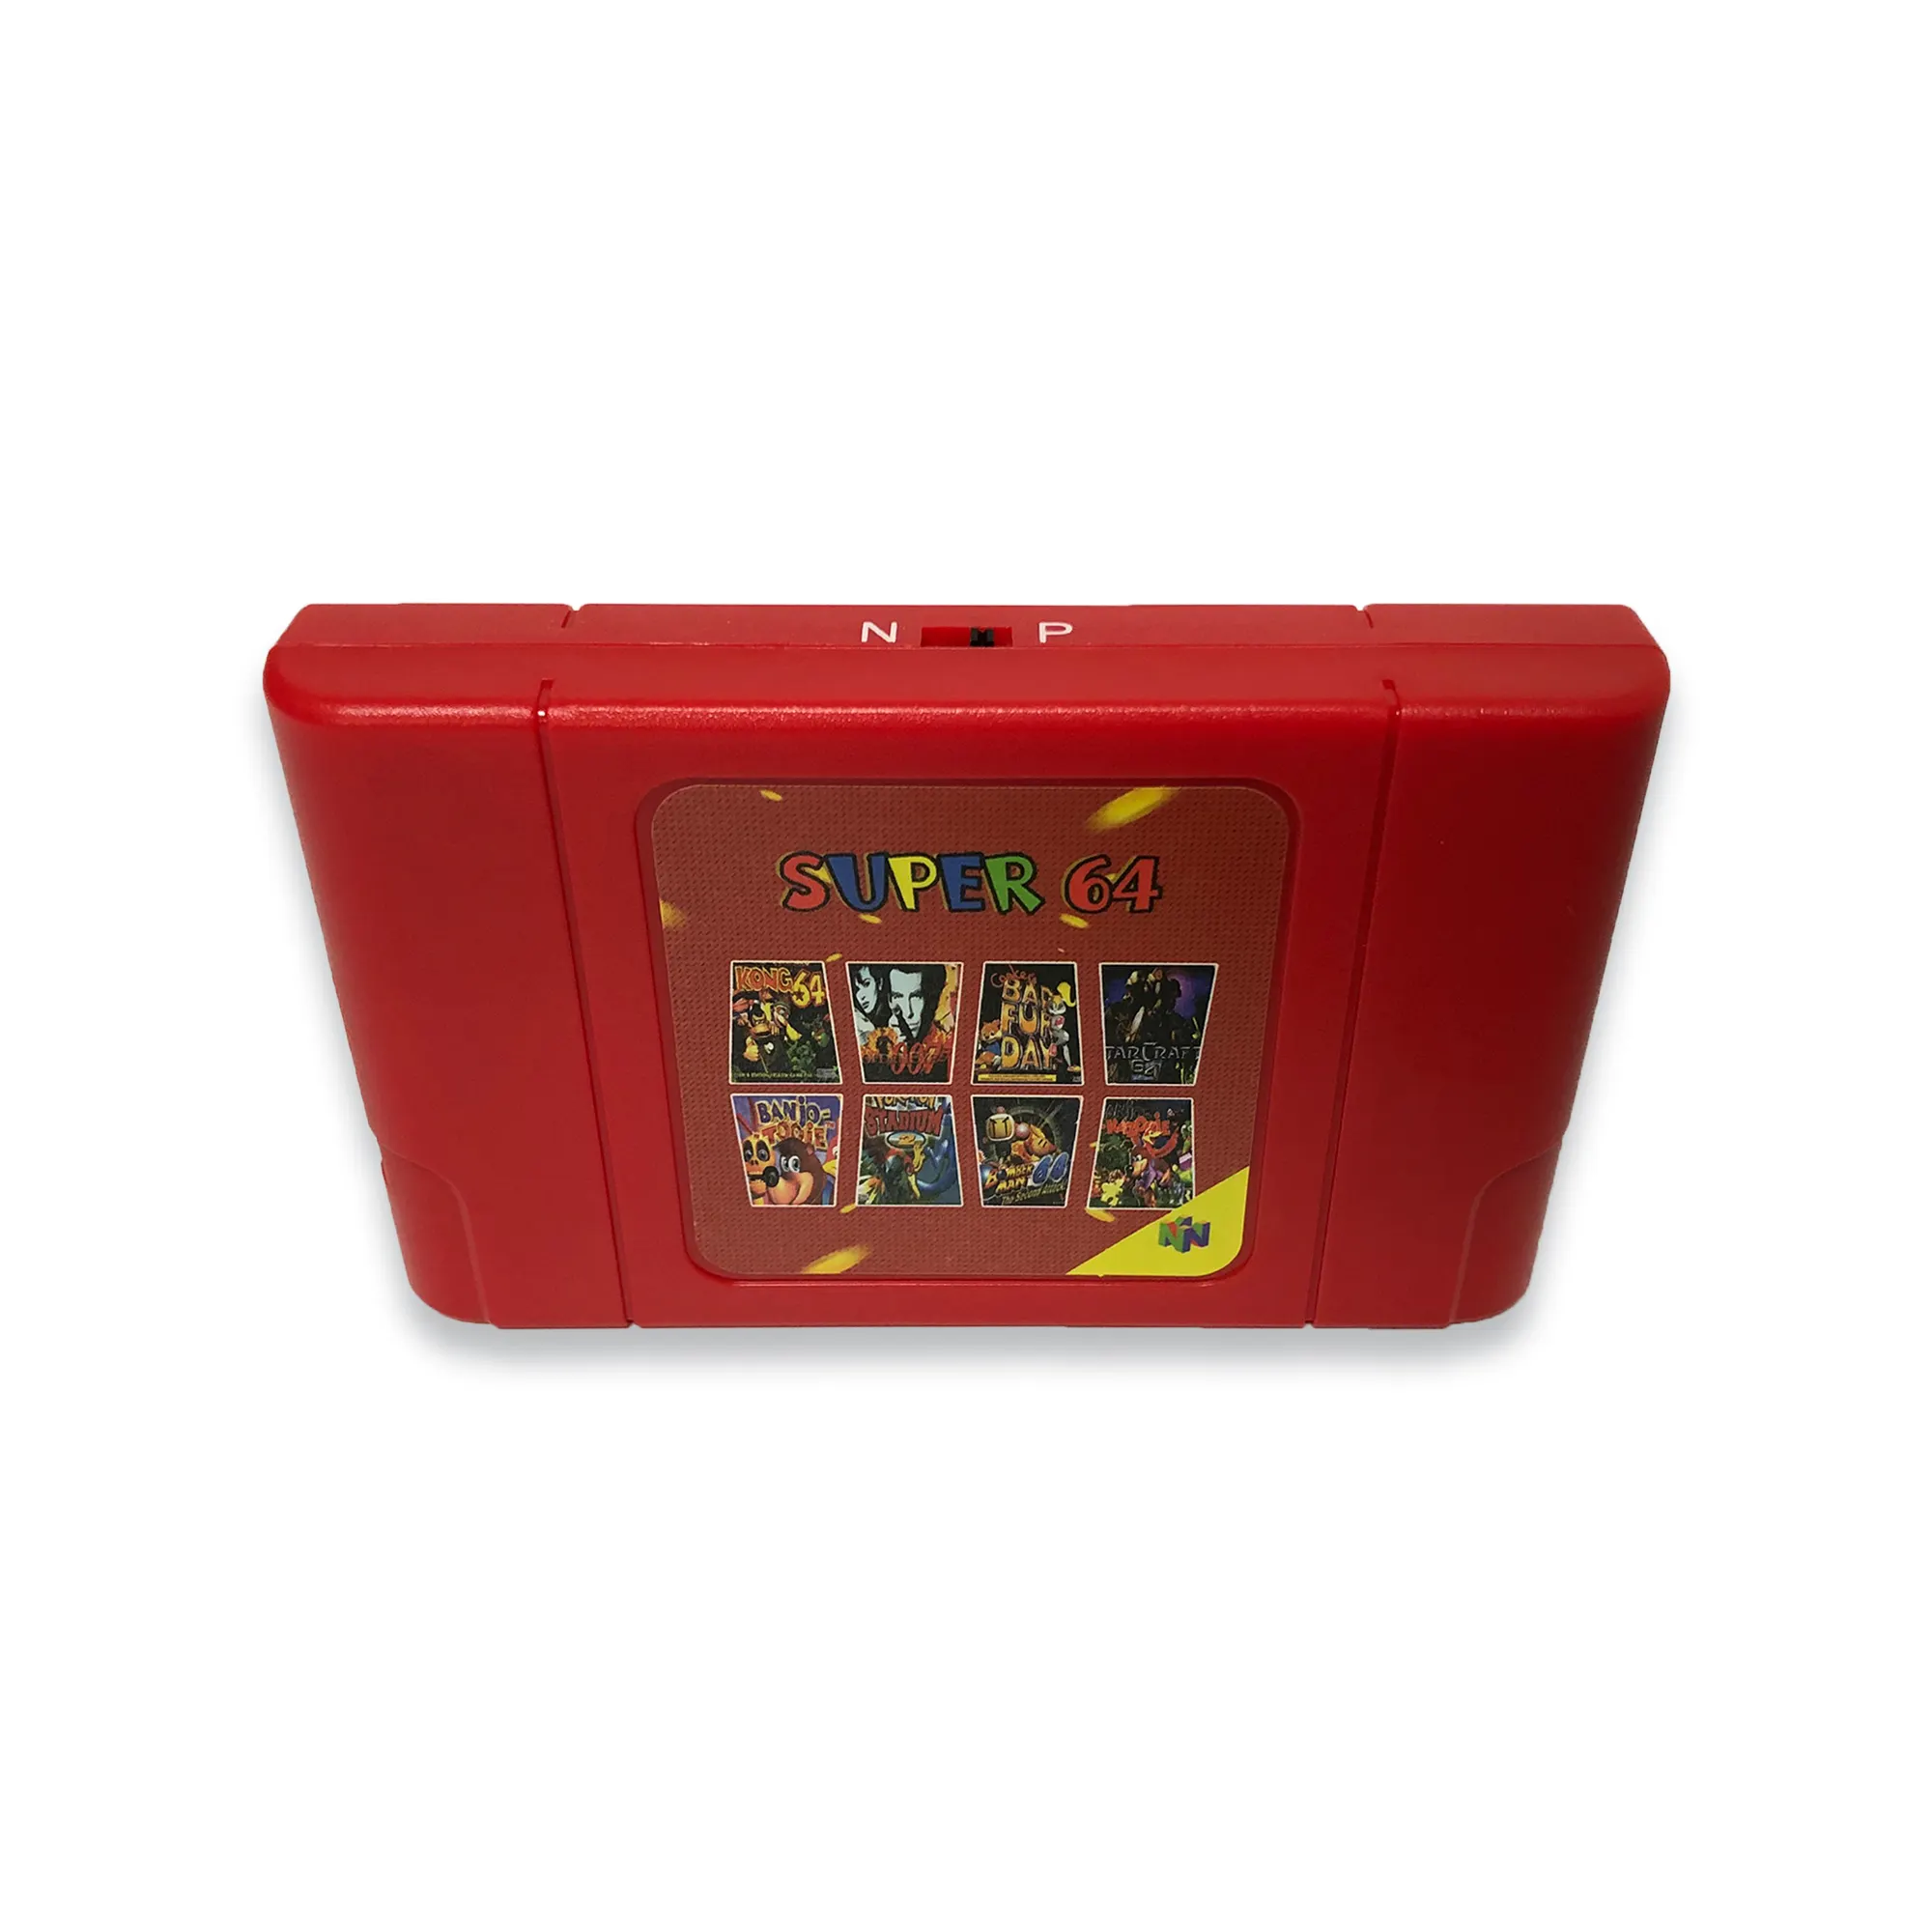 Super 64 DIY 340 in 1 Spiele kassette für N64 Videospiel konsole Unterstützung NTSC & PAL System Super Mario 64 Party 1 2 3 Zelda Quest